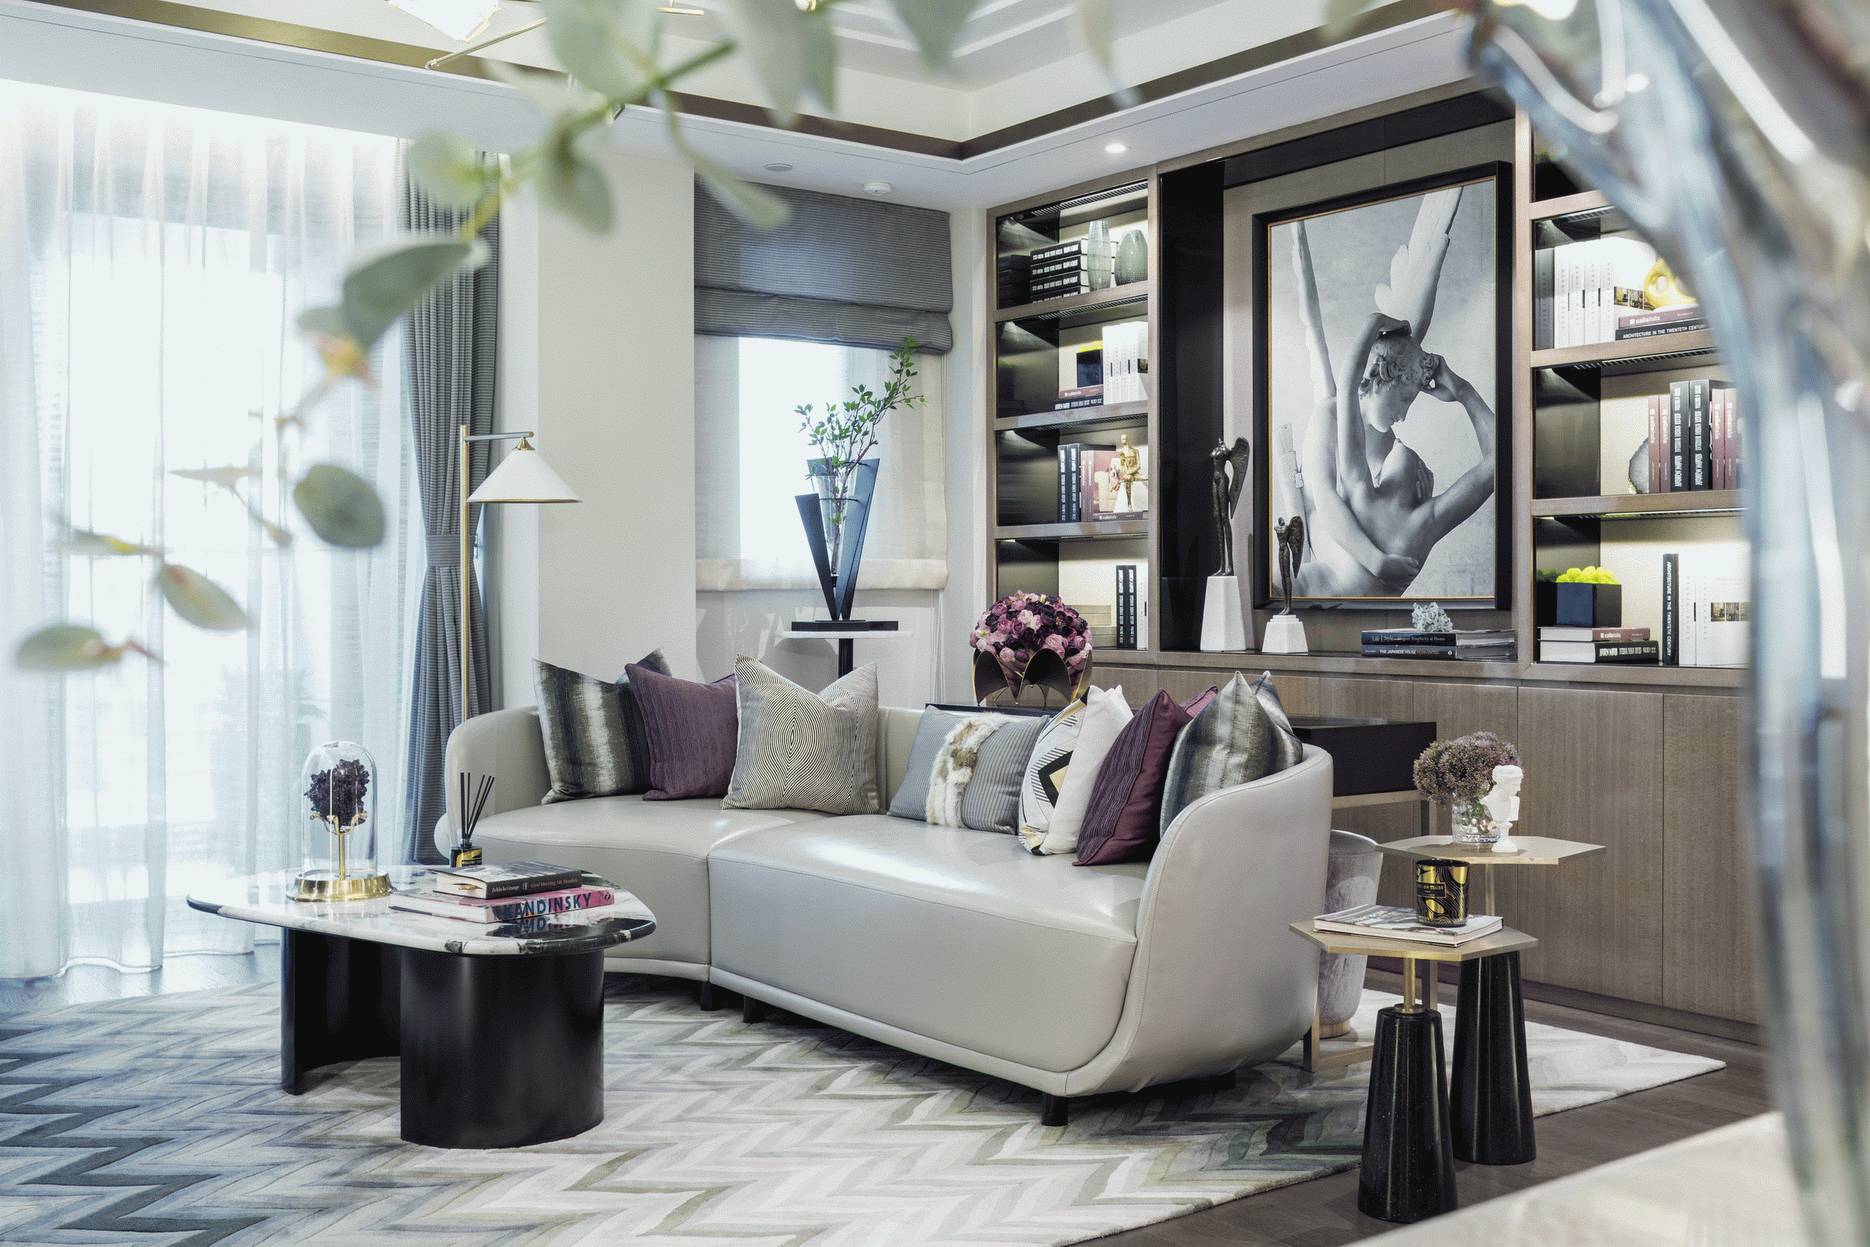 客厅沙发造型简洁，背景书柜线条流畅，整体选用轻奢风中常见的气质色调打造。